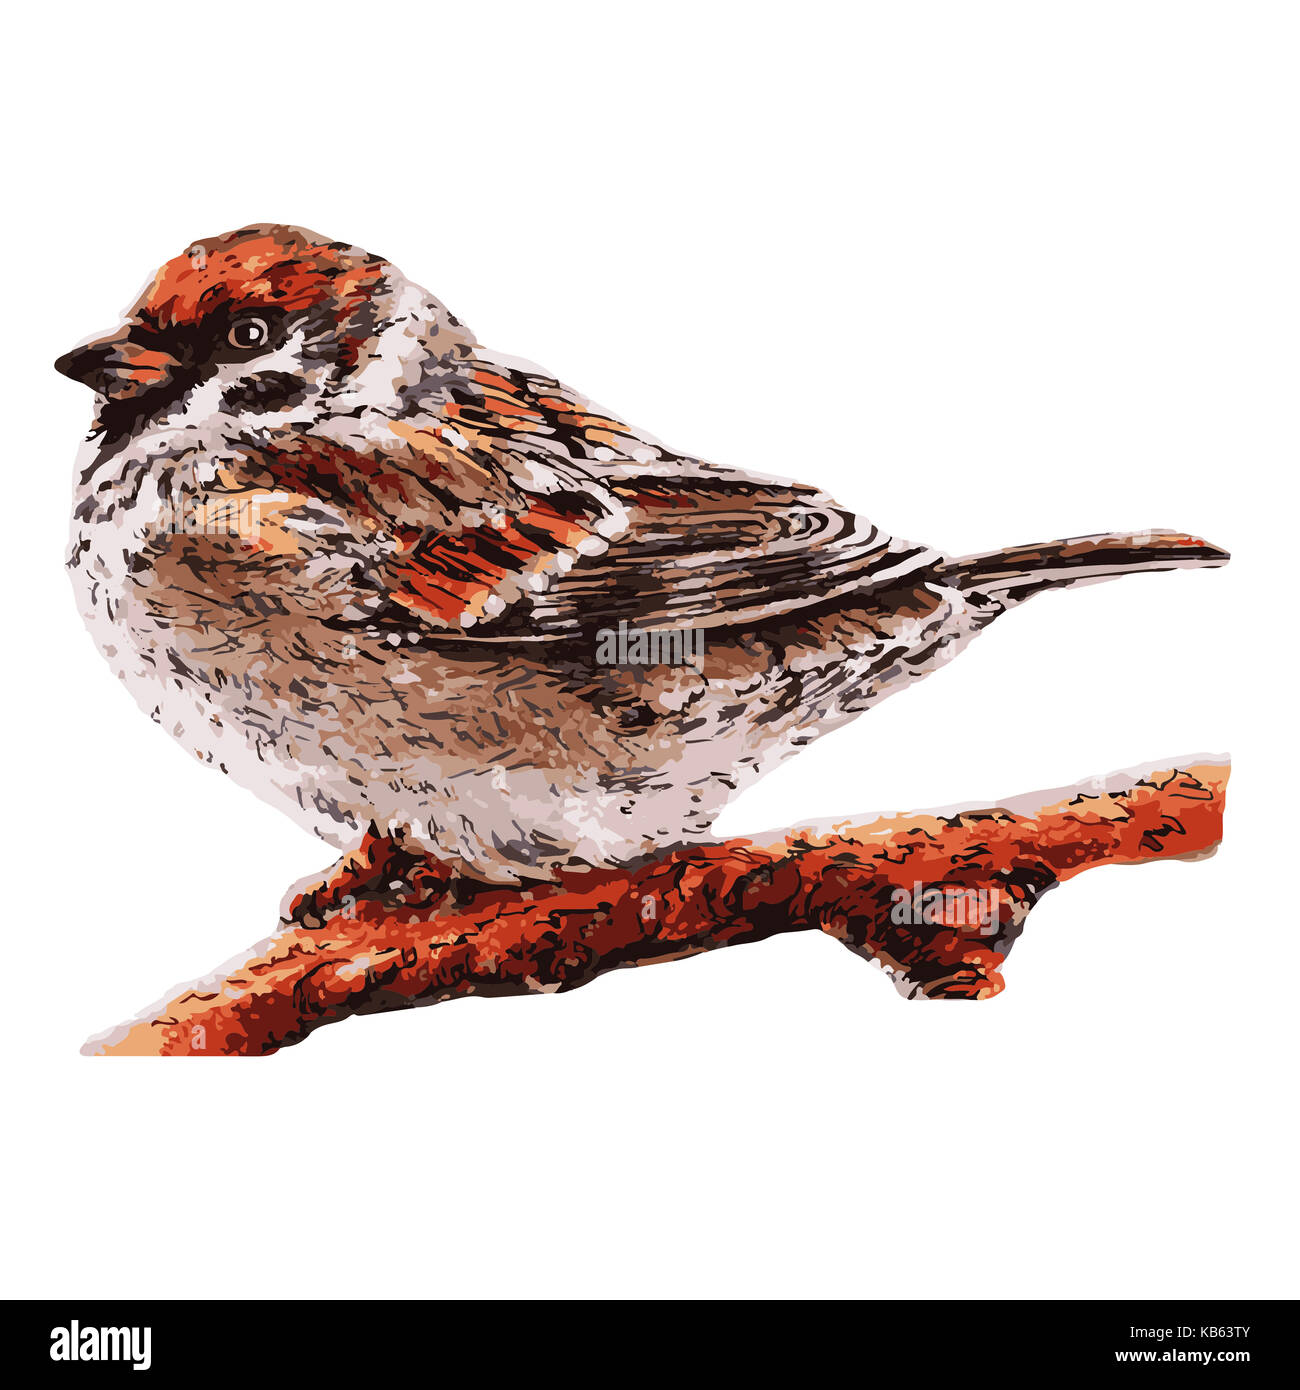 small sparrow on the tree. Bird illustration Stock Photo